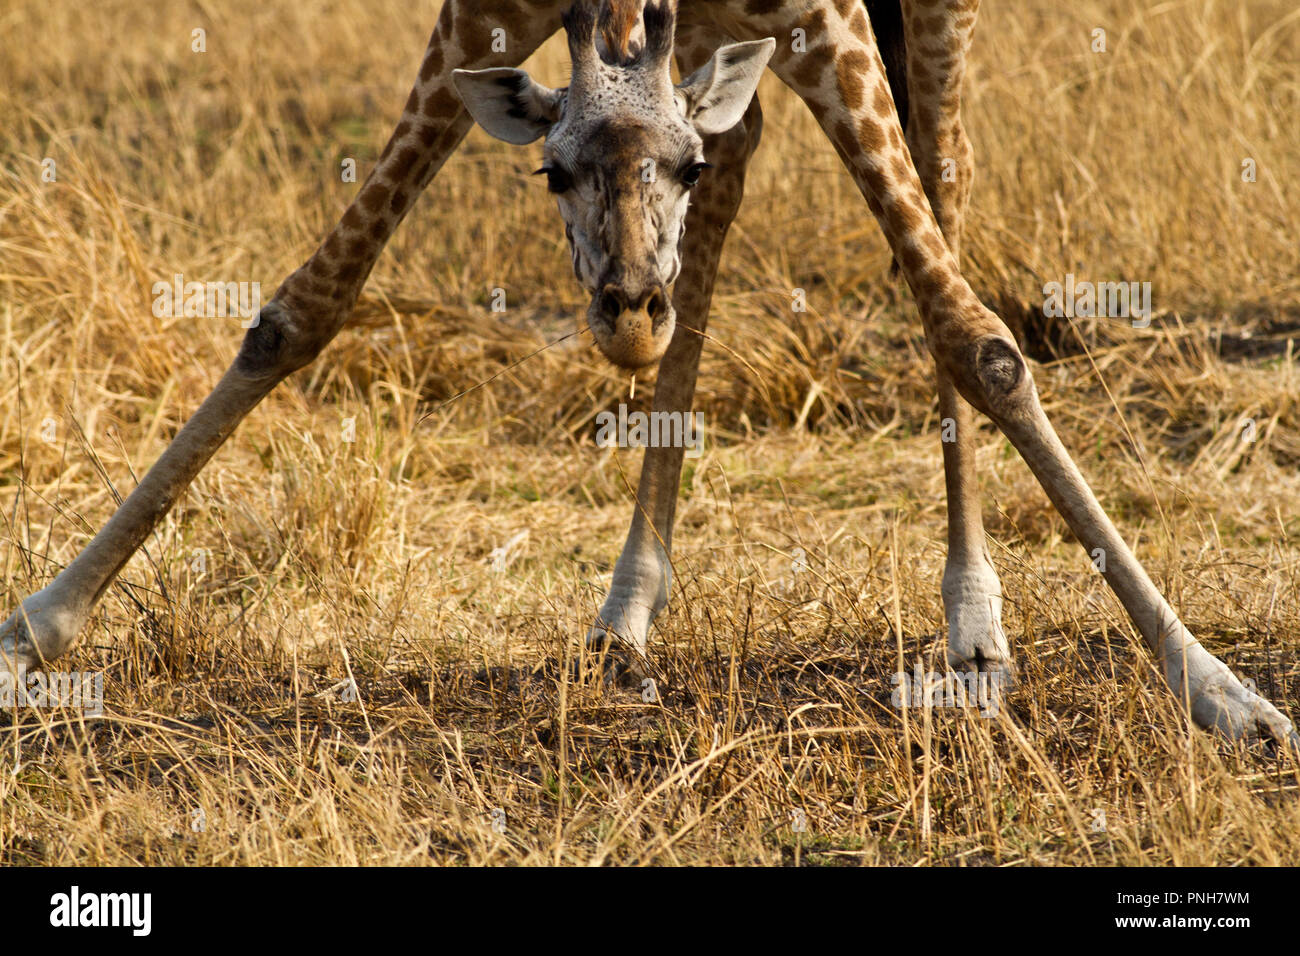 Girafe sera occasionnellement mangent de l'herbe et lécher des minéraux du sol. Banque D'Images